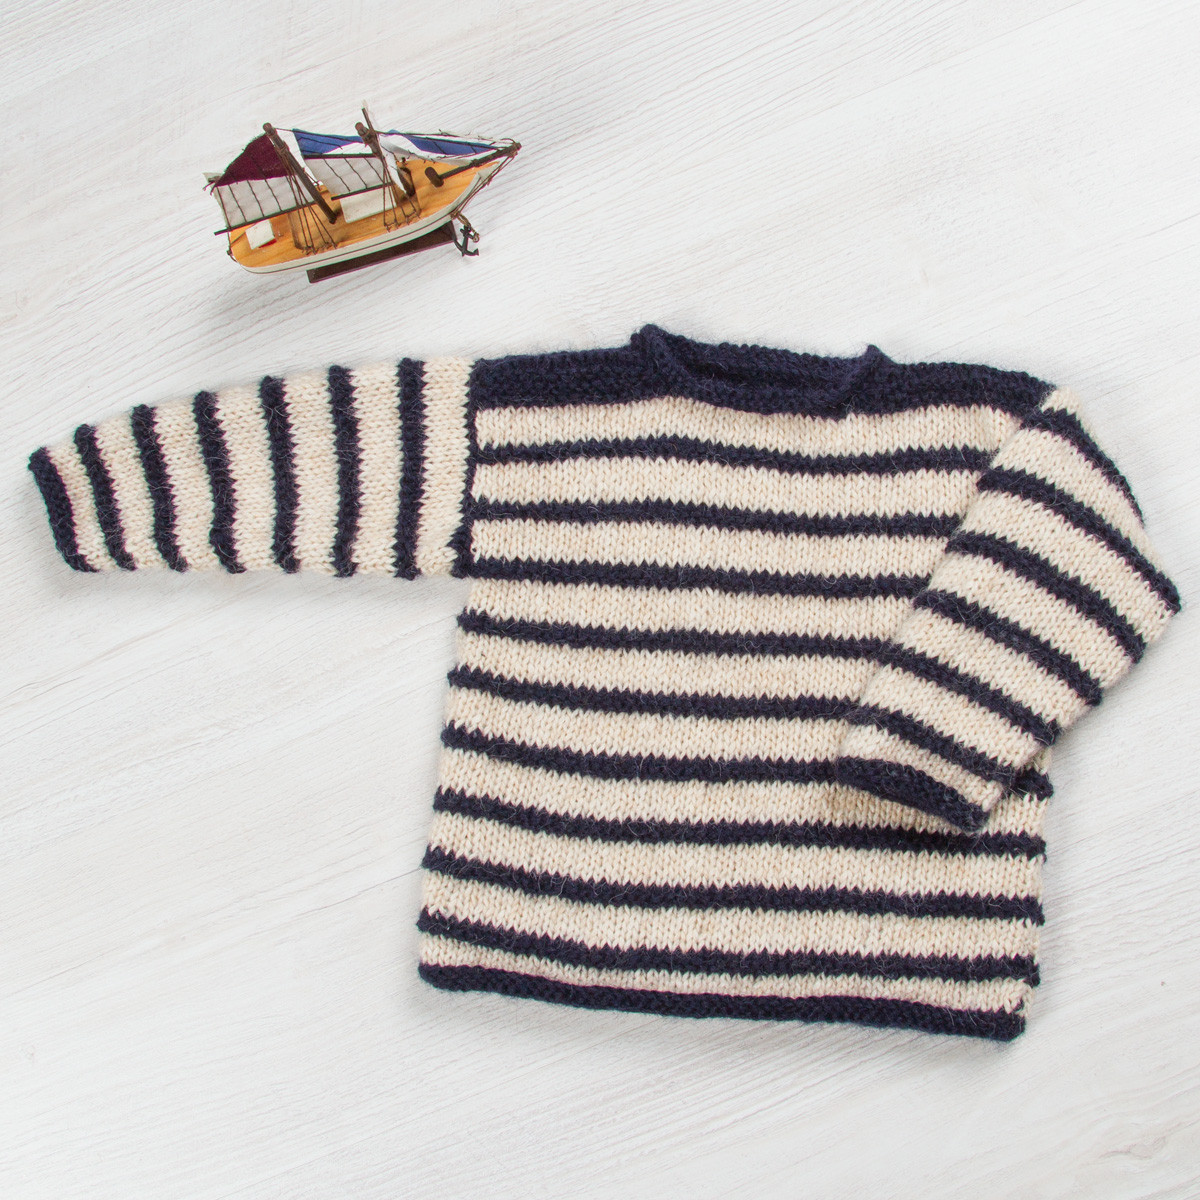 Kit bébé : un pull en laine 100% naturelle